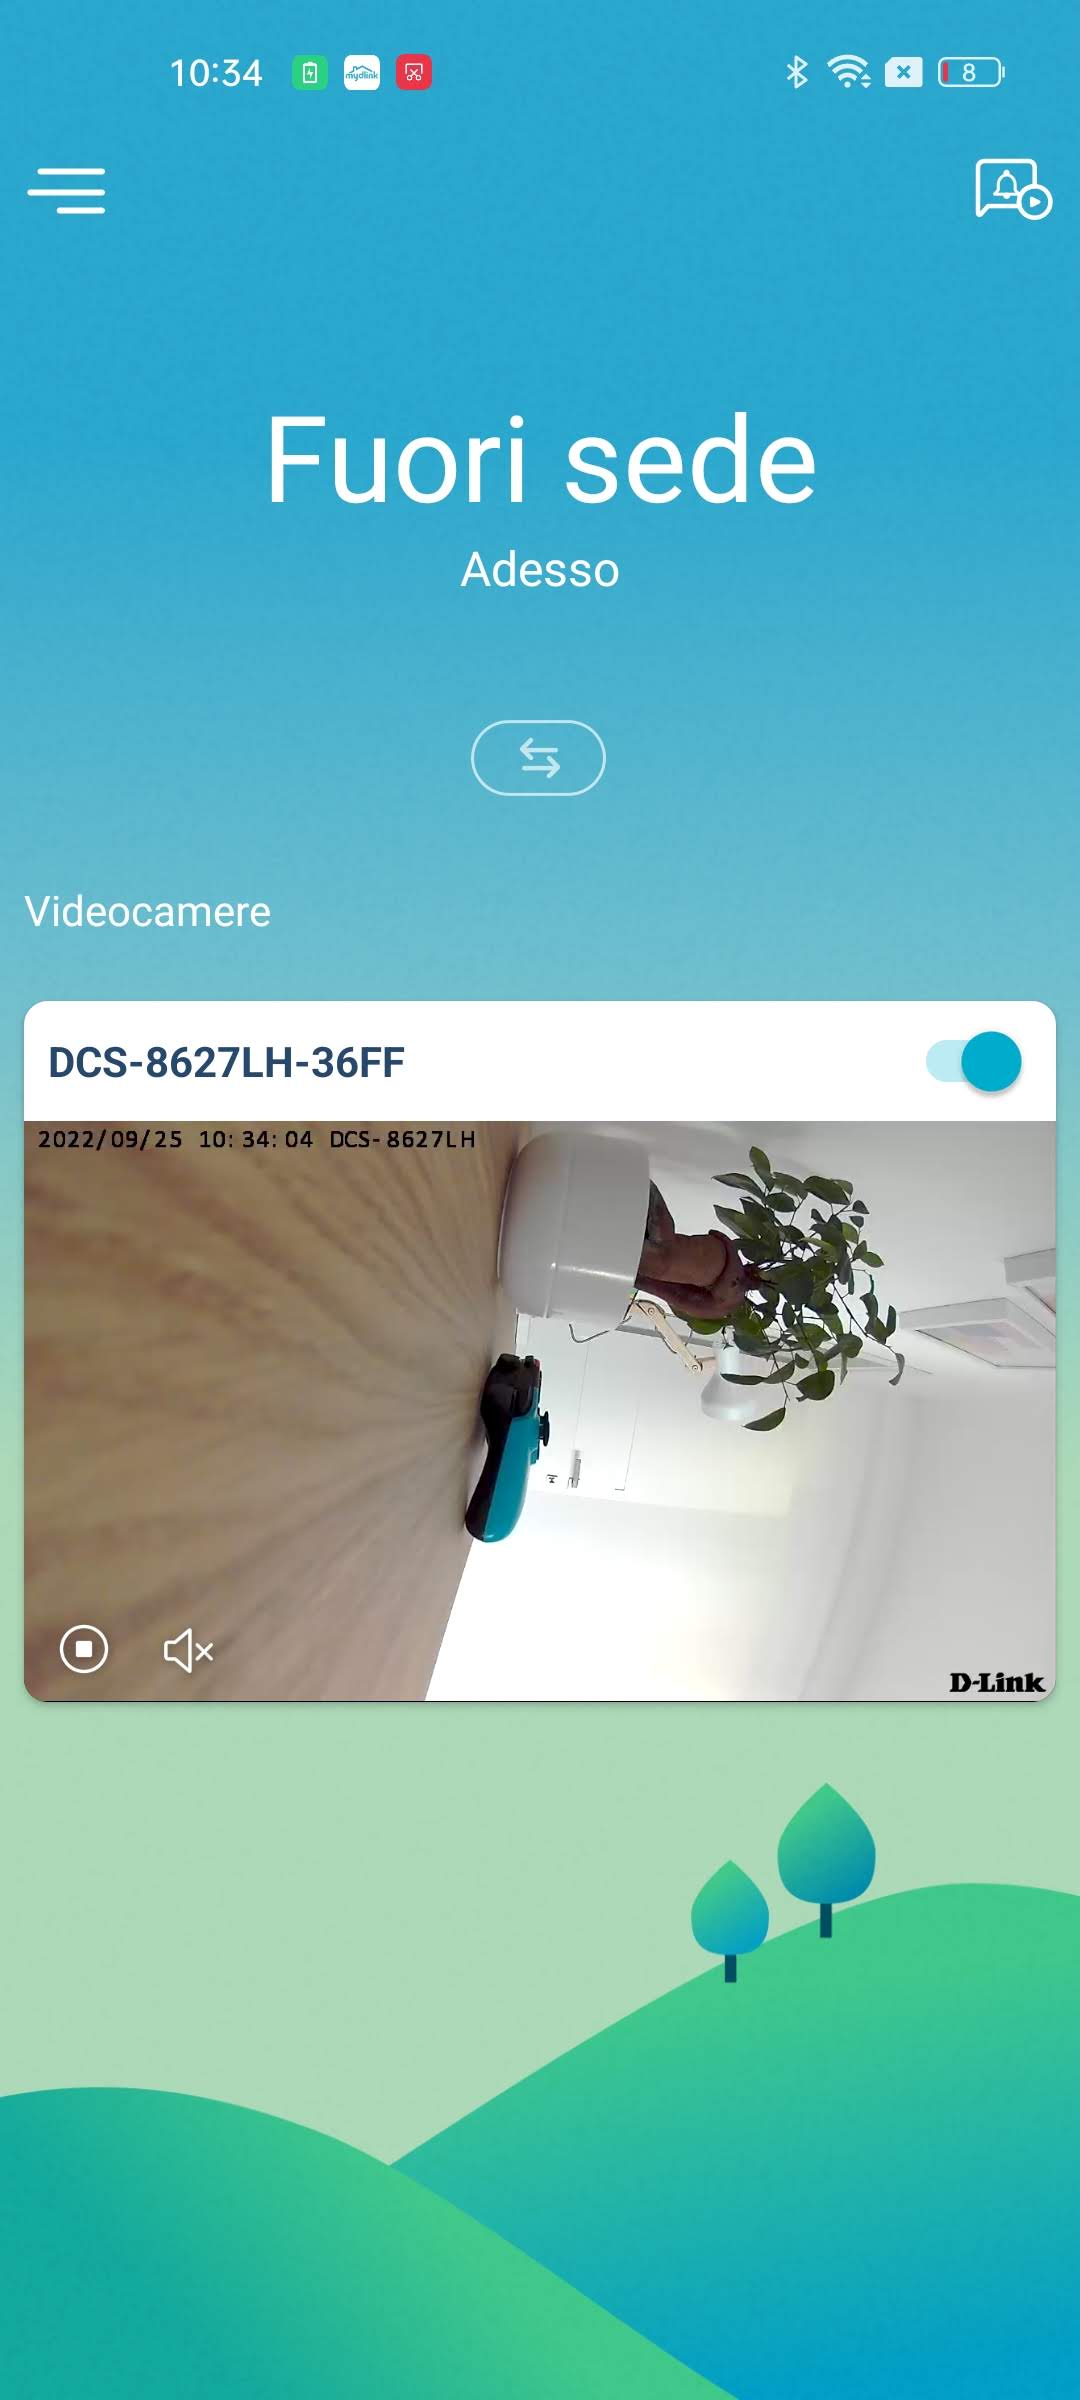 Videocamera di sicurezza D-Link DCS-8627LH, la nostra prova